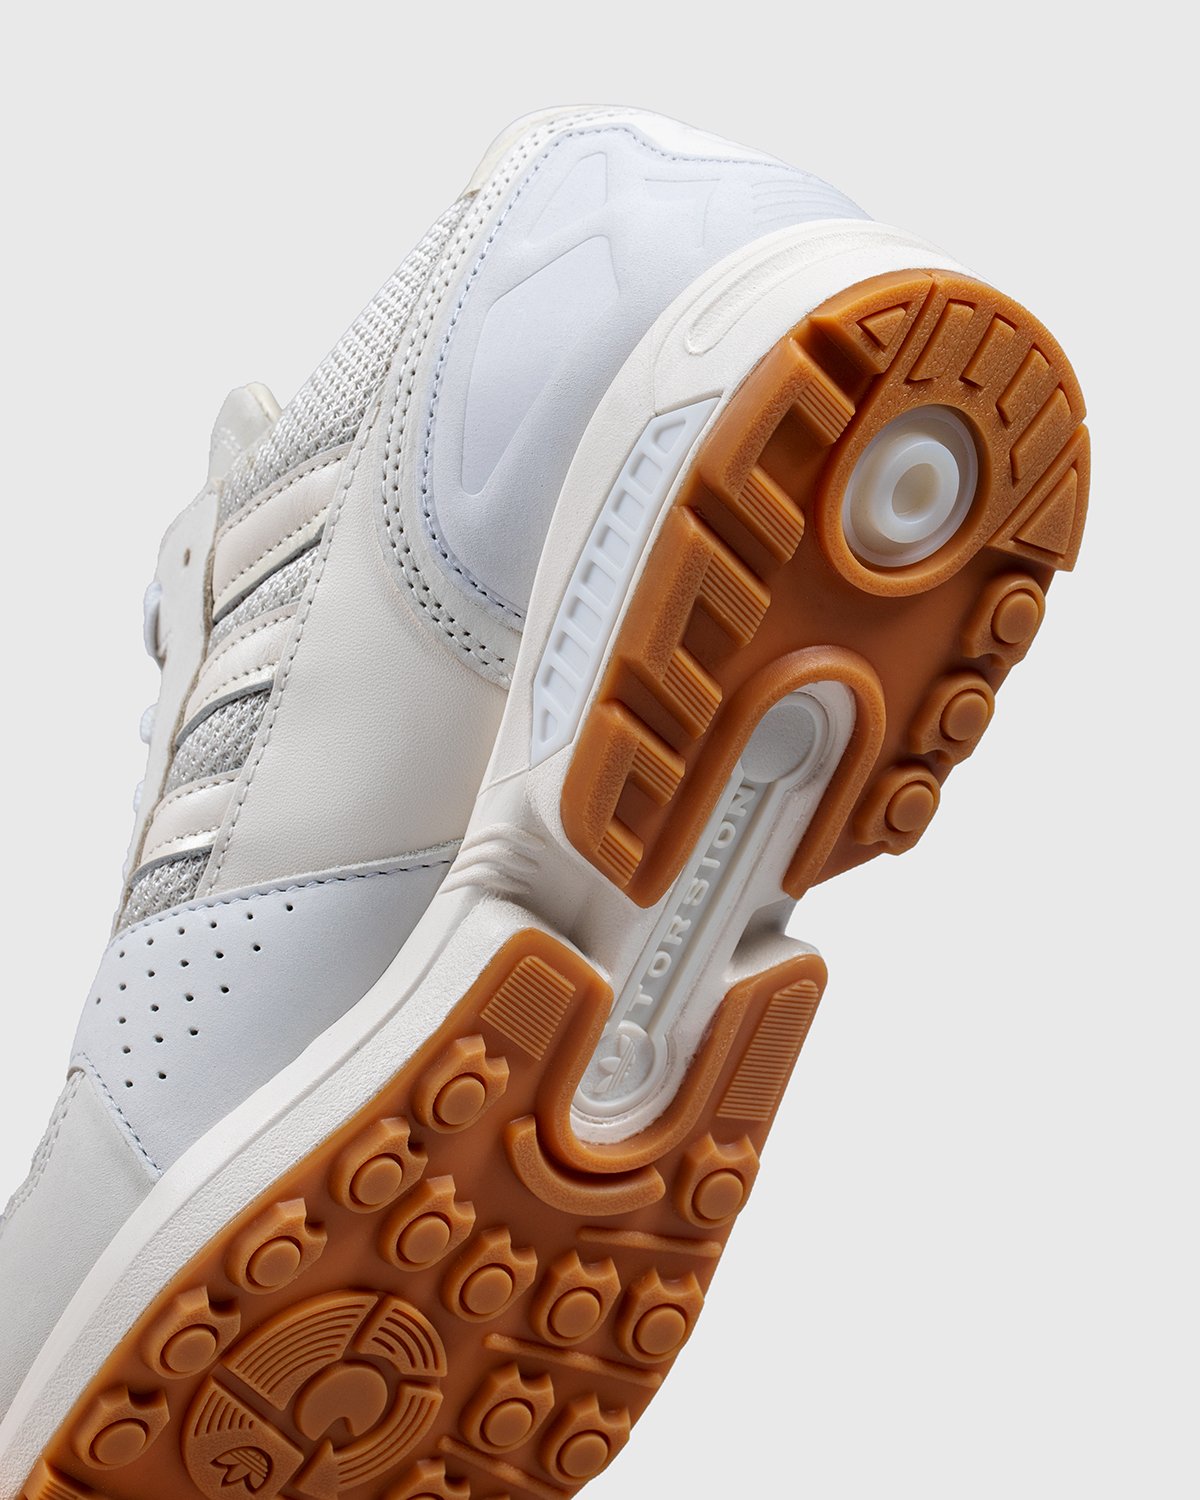 Adidas x Highsnobiety - ZX8000 Qualität Cream White - Footwear - White - Image 6